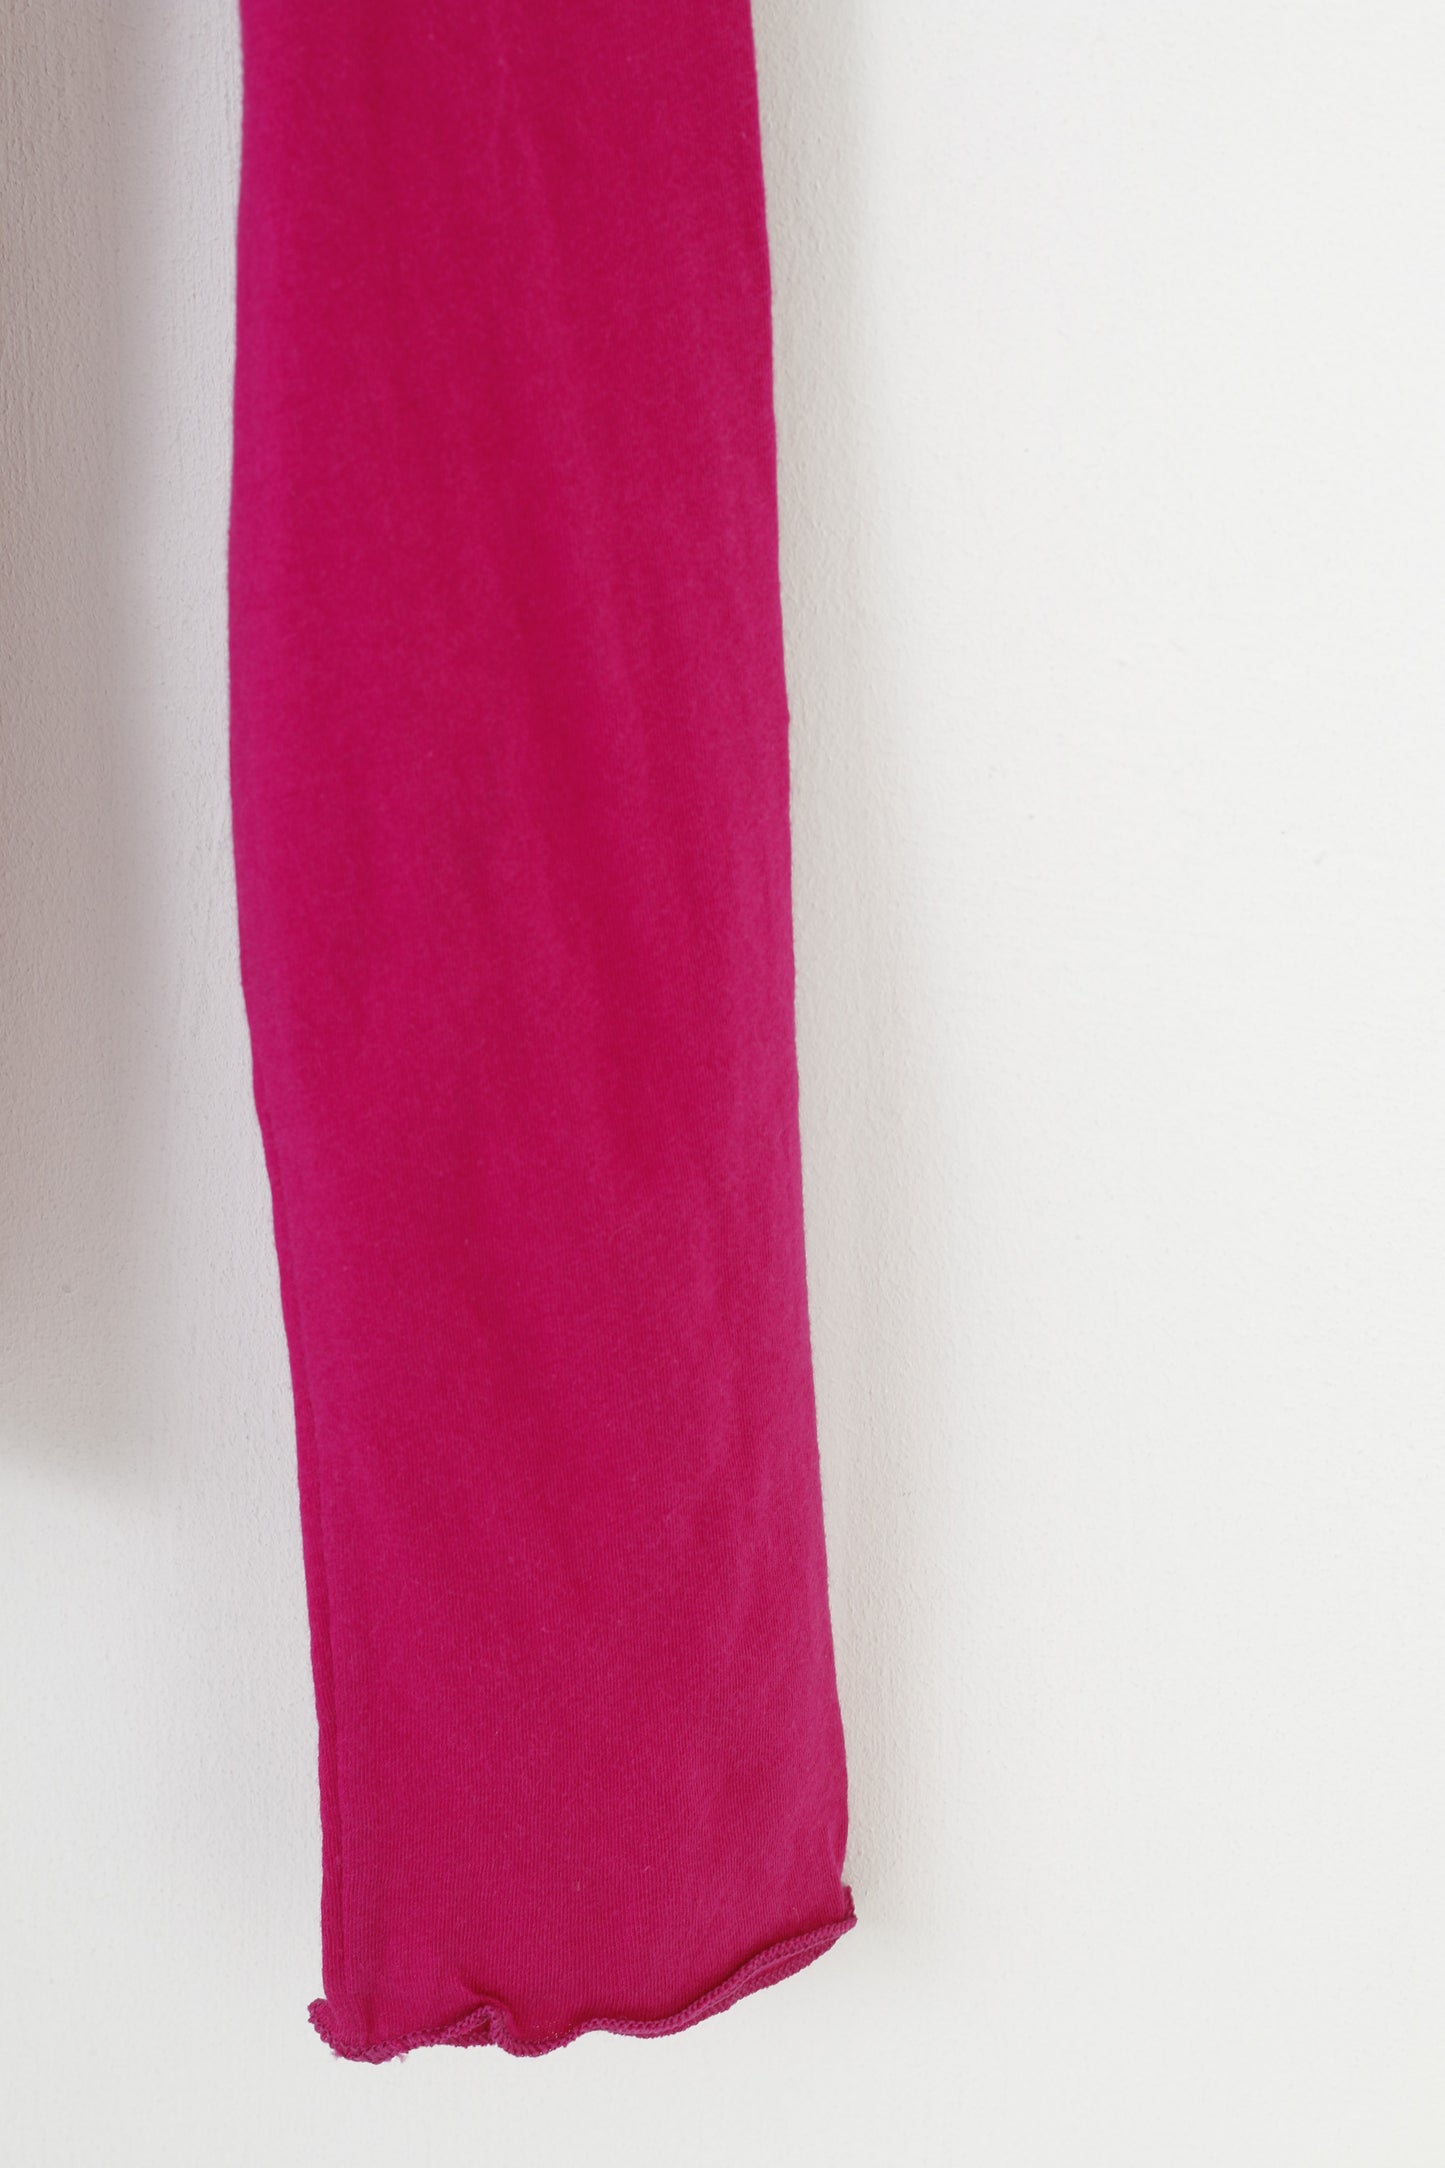 American Apparel Sony Chemise à manches longues et col rond en coton violet pour femme